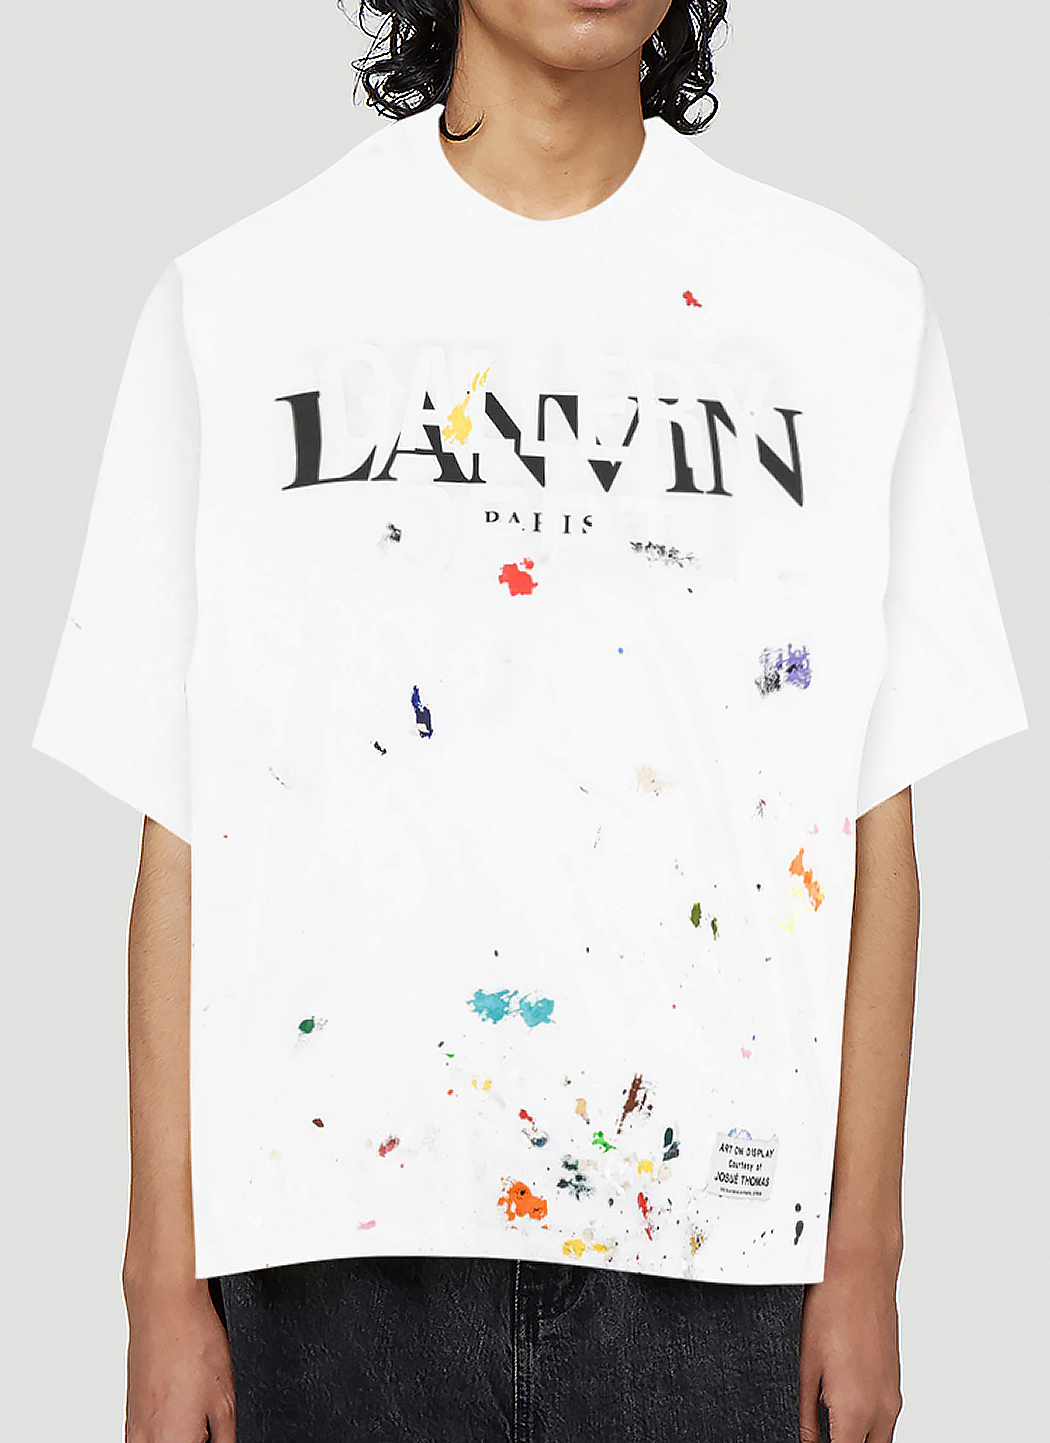 Lanvin X Gallery Dept. Men's Splatter T-Shirt in White | LN-CC